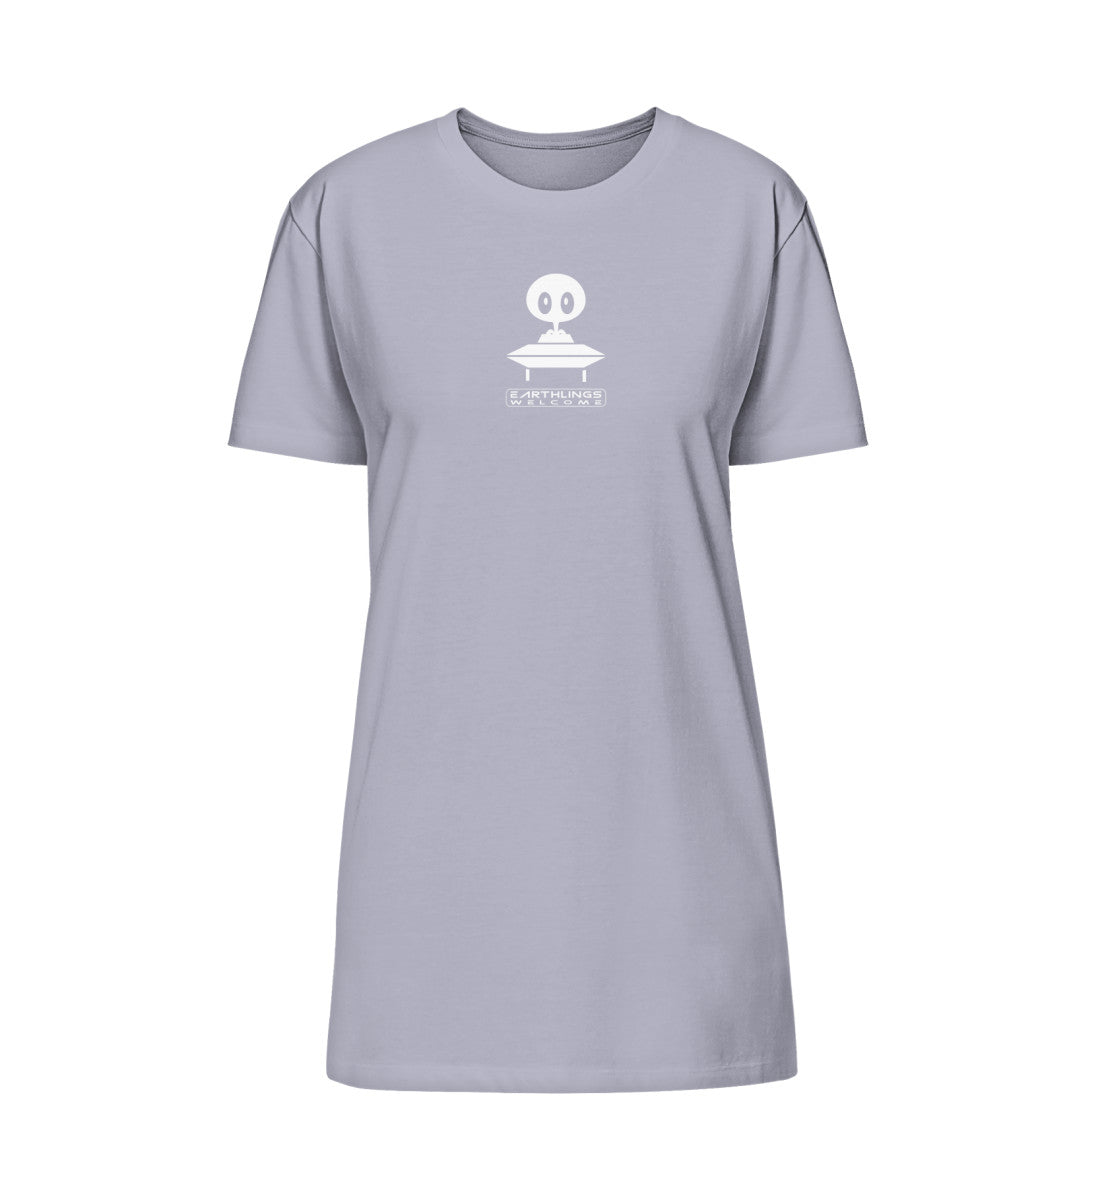 Lavender farbiges T-Shirt Kleid mit Design Druck der Roger Rockawoo Kollektion earthlings welcome